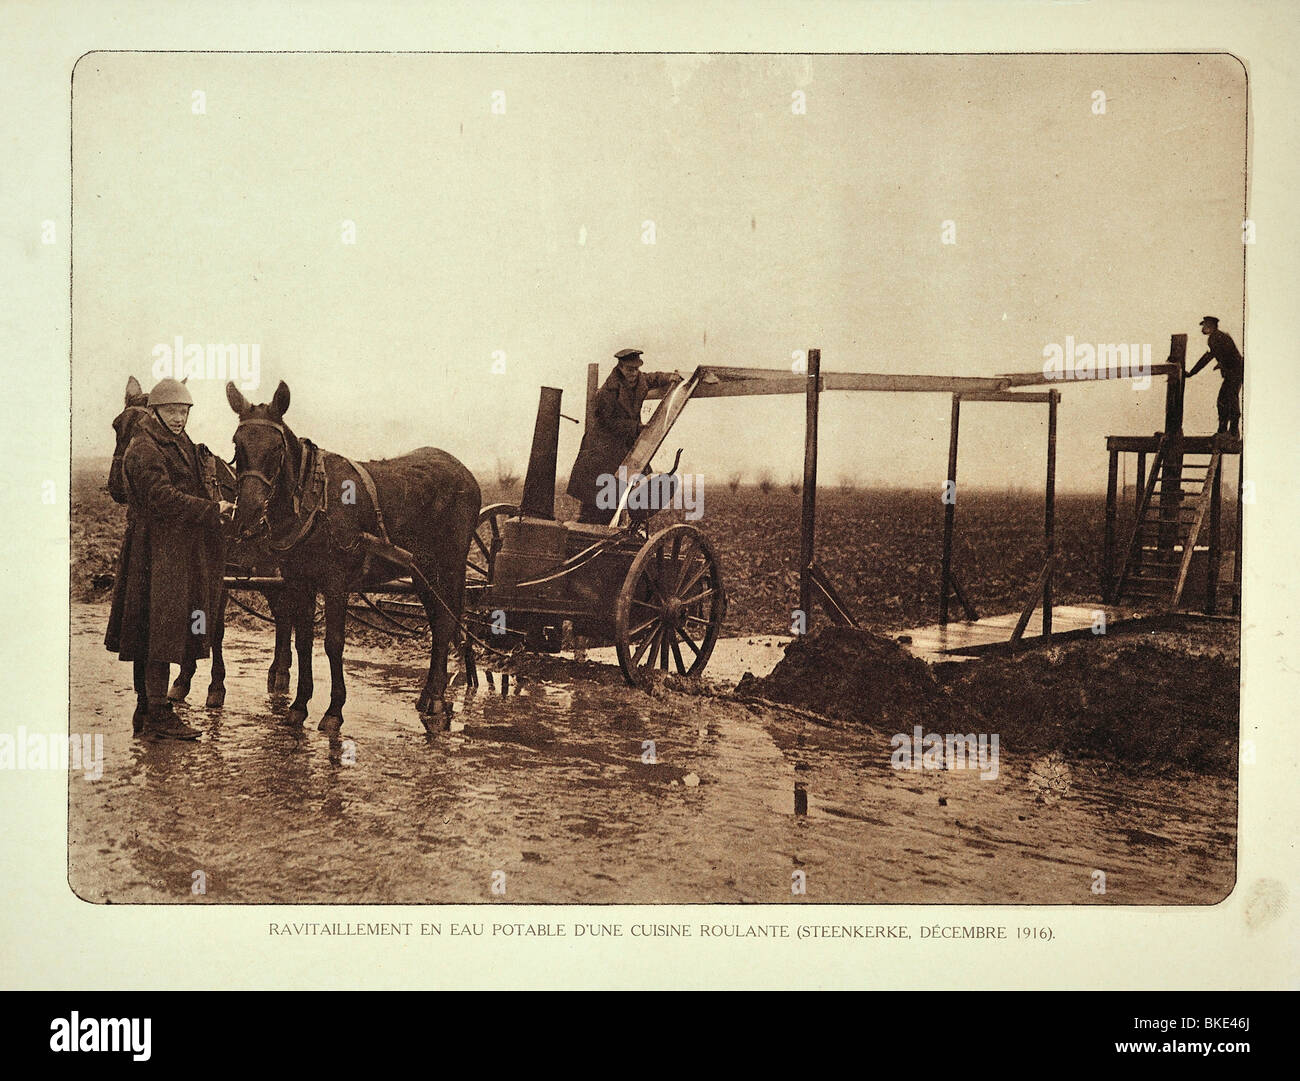 Les soldats de la PREMIÈRE GUERRE MONDIALE à l'approvisionnement en eau potable de la bataille à Steenkerke en Flandre occidentale, pendant la Première Guerre mondiale, la Belgique Banque D'Images